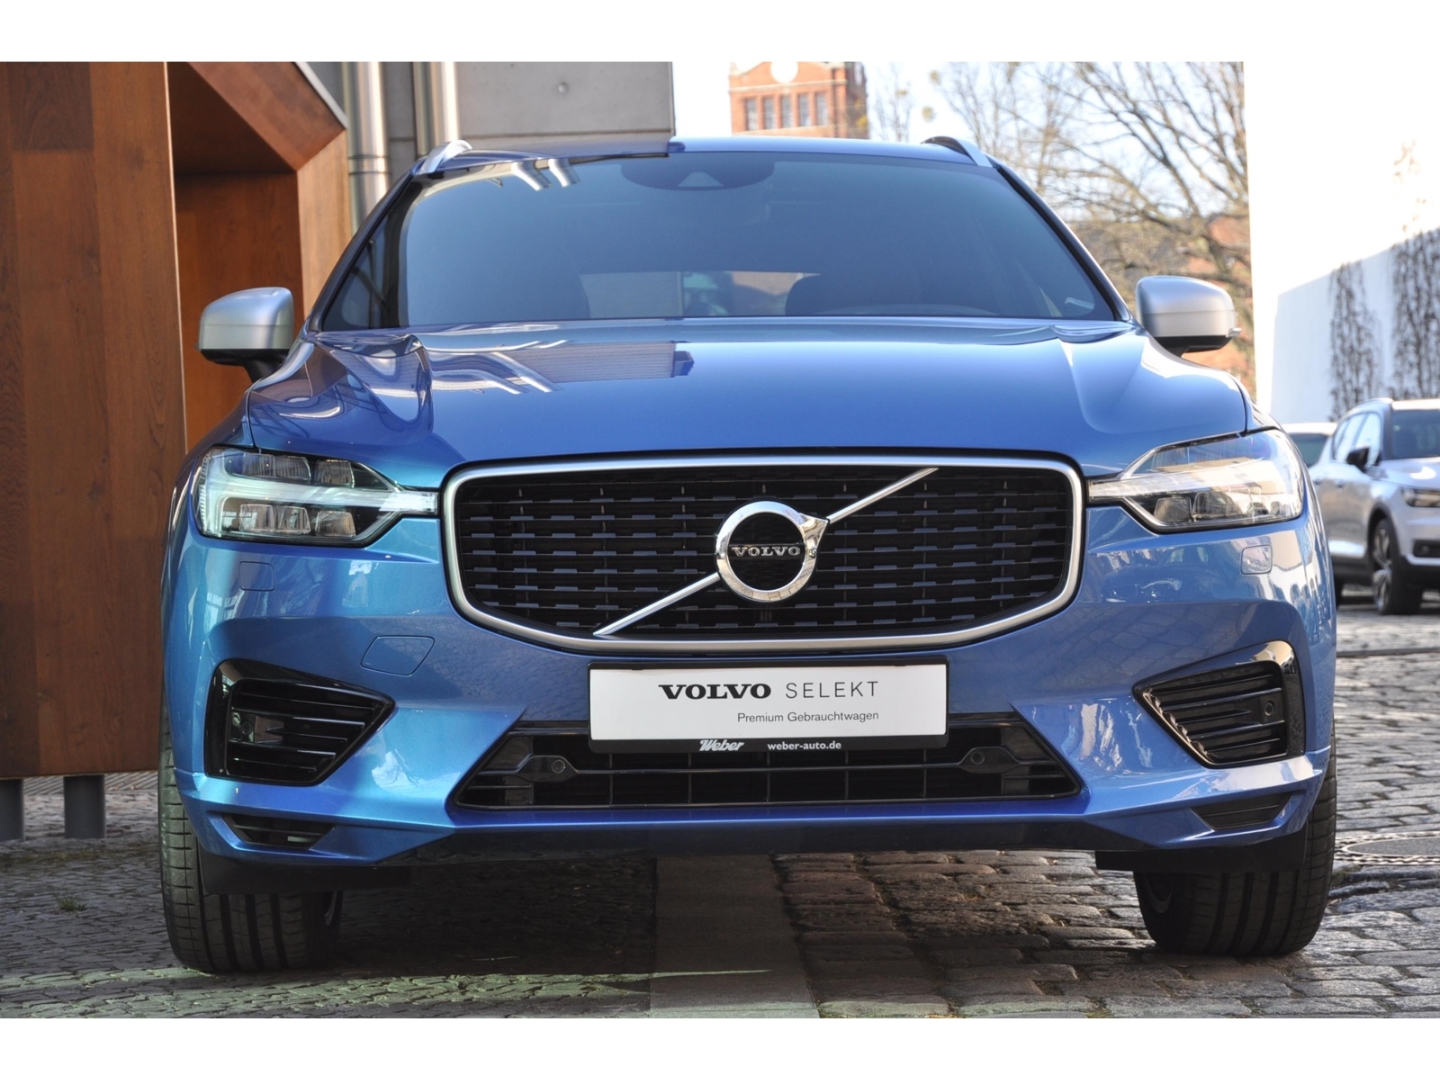 Volvo Berlin - Willkommen bei Weber Automobile Berlin > Fahrzeuge